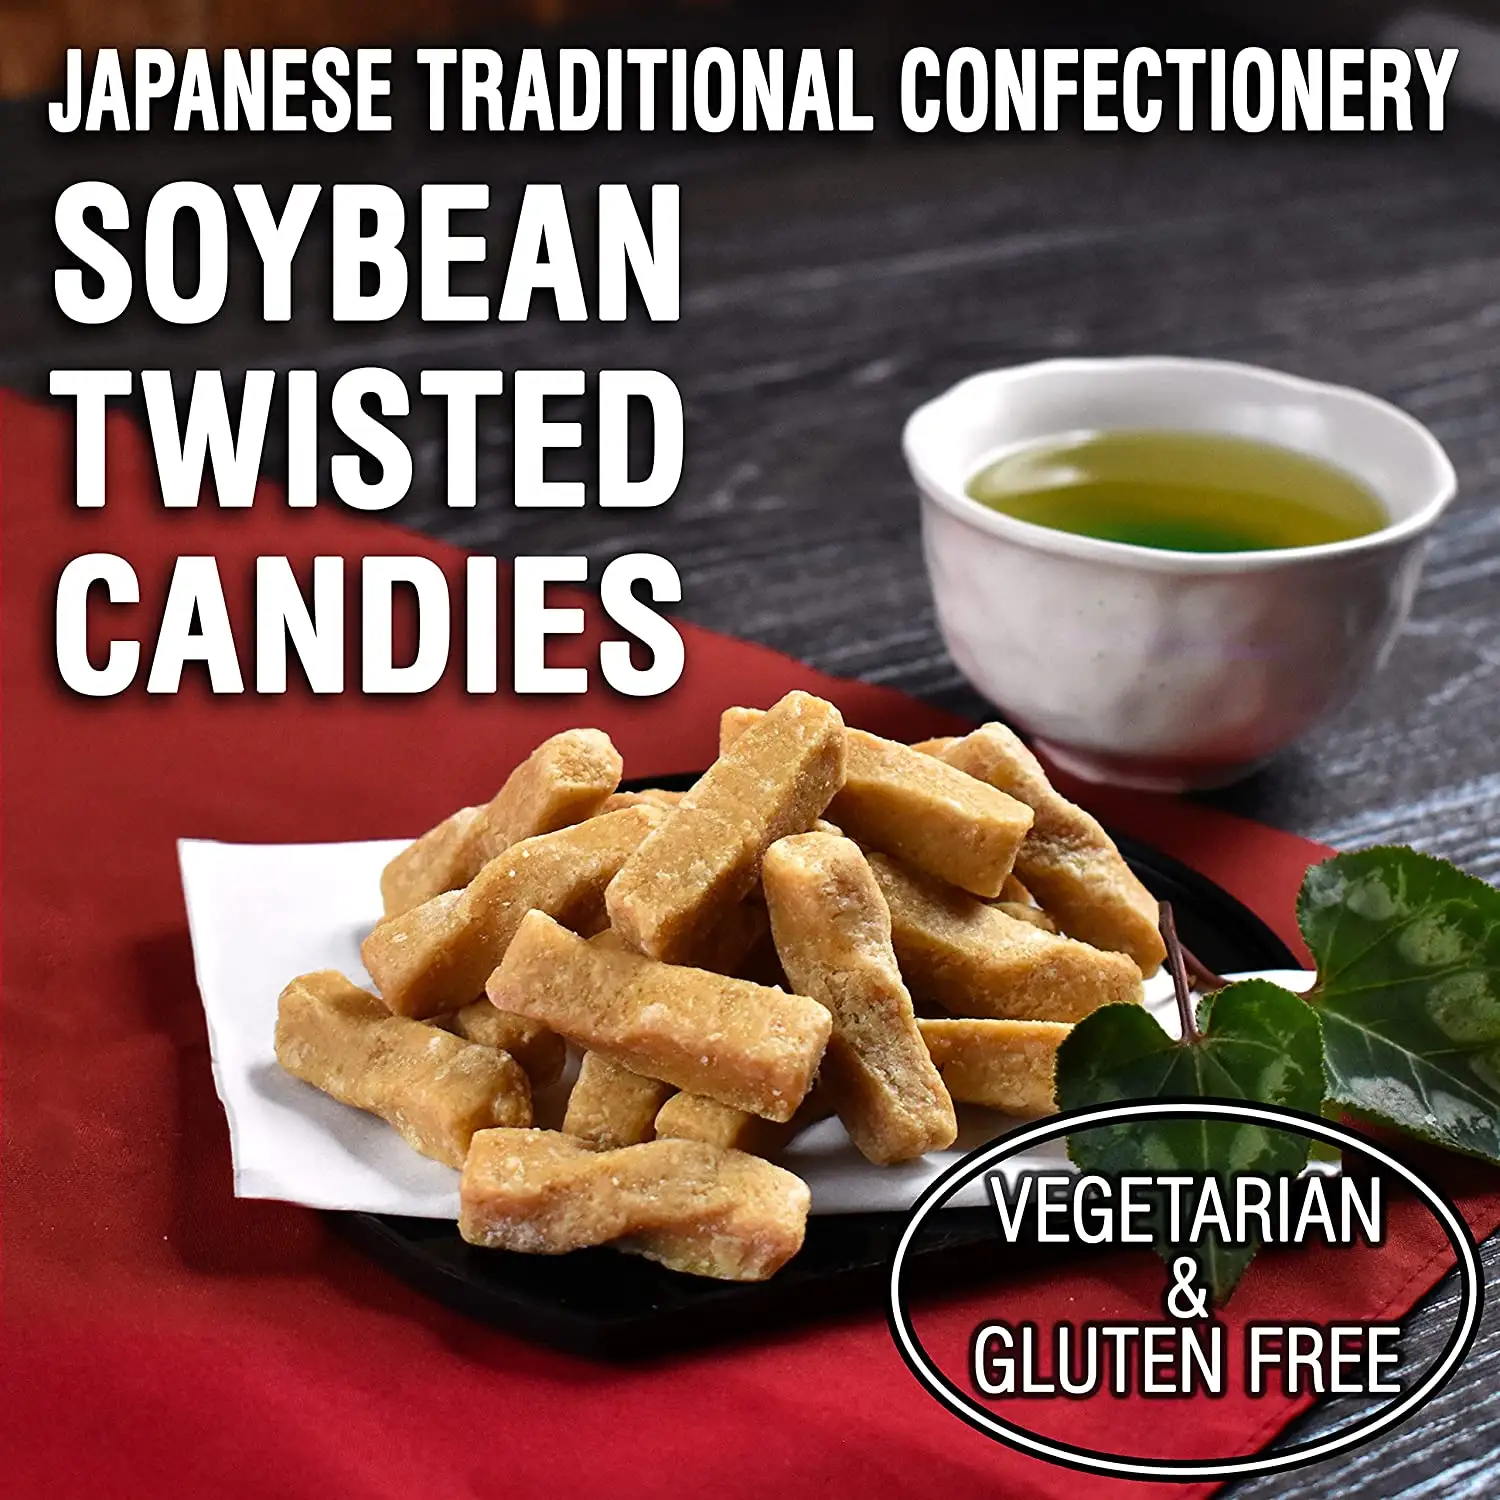 Японские закуски-Kinako Mochi Twisted, японские традиционные конфеты ручной работы, без добавок, с использованием соевых бобов Хоккайдо